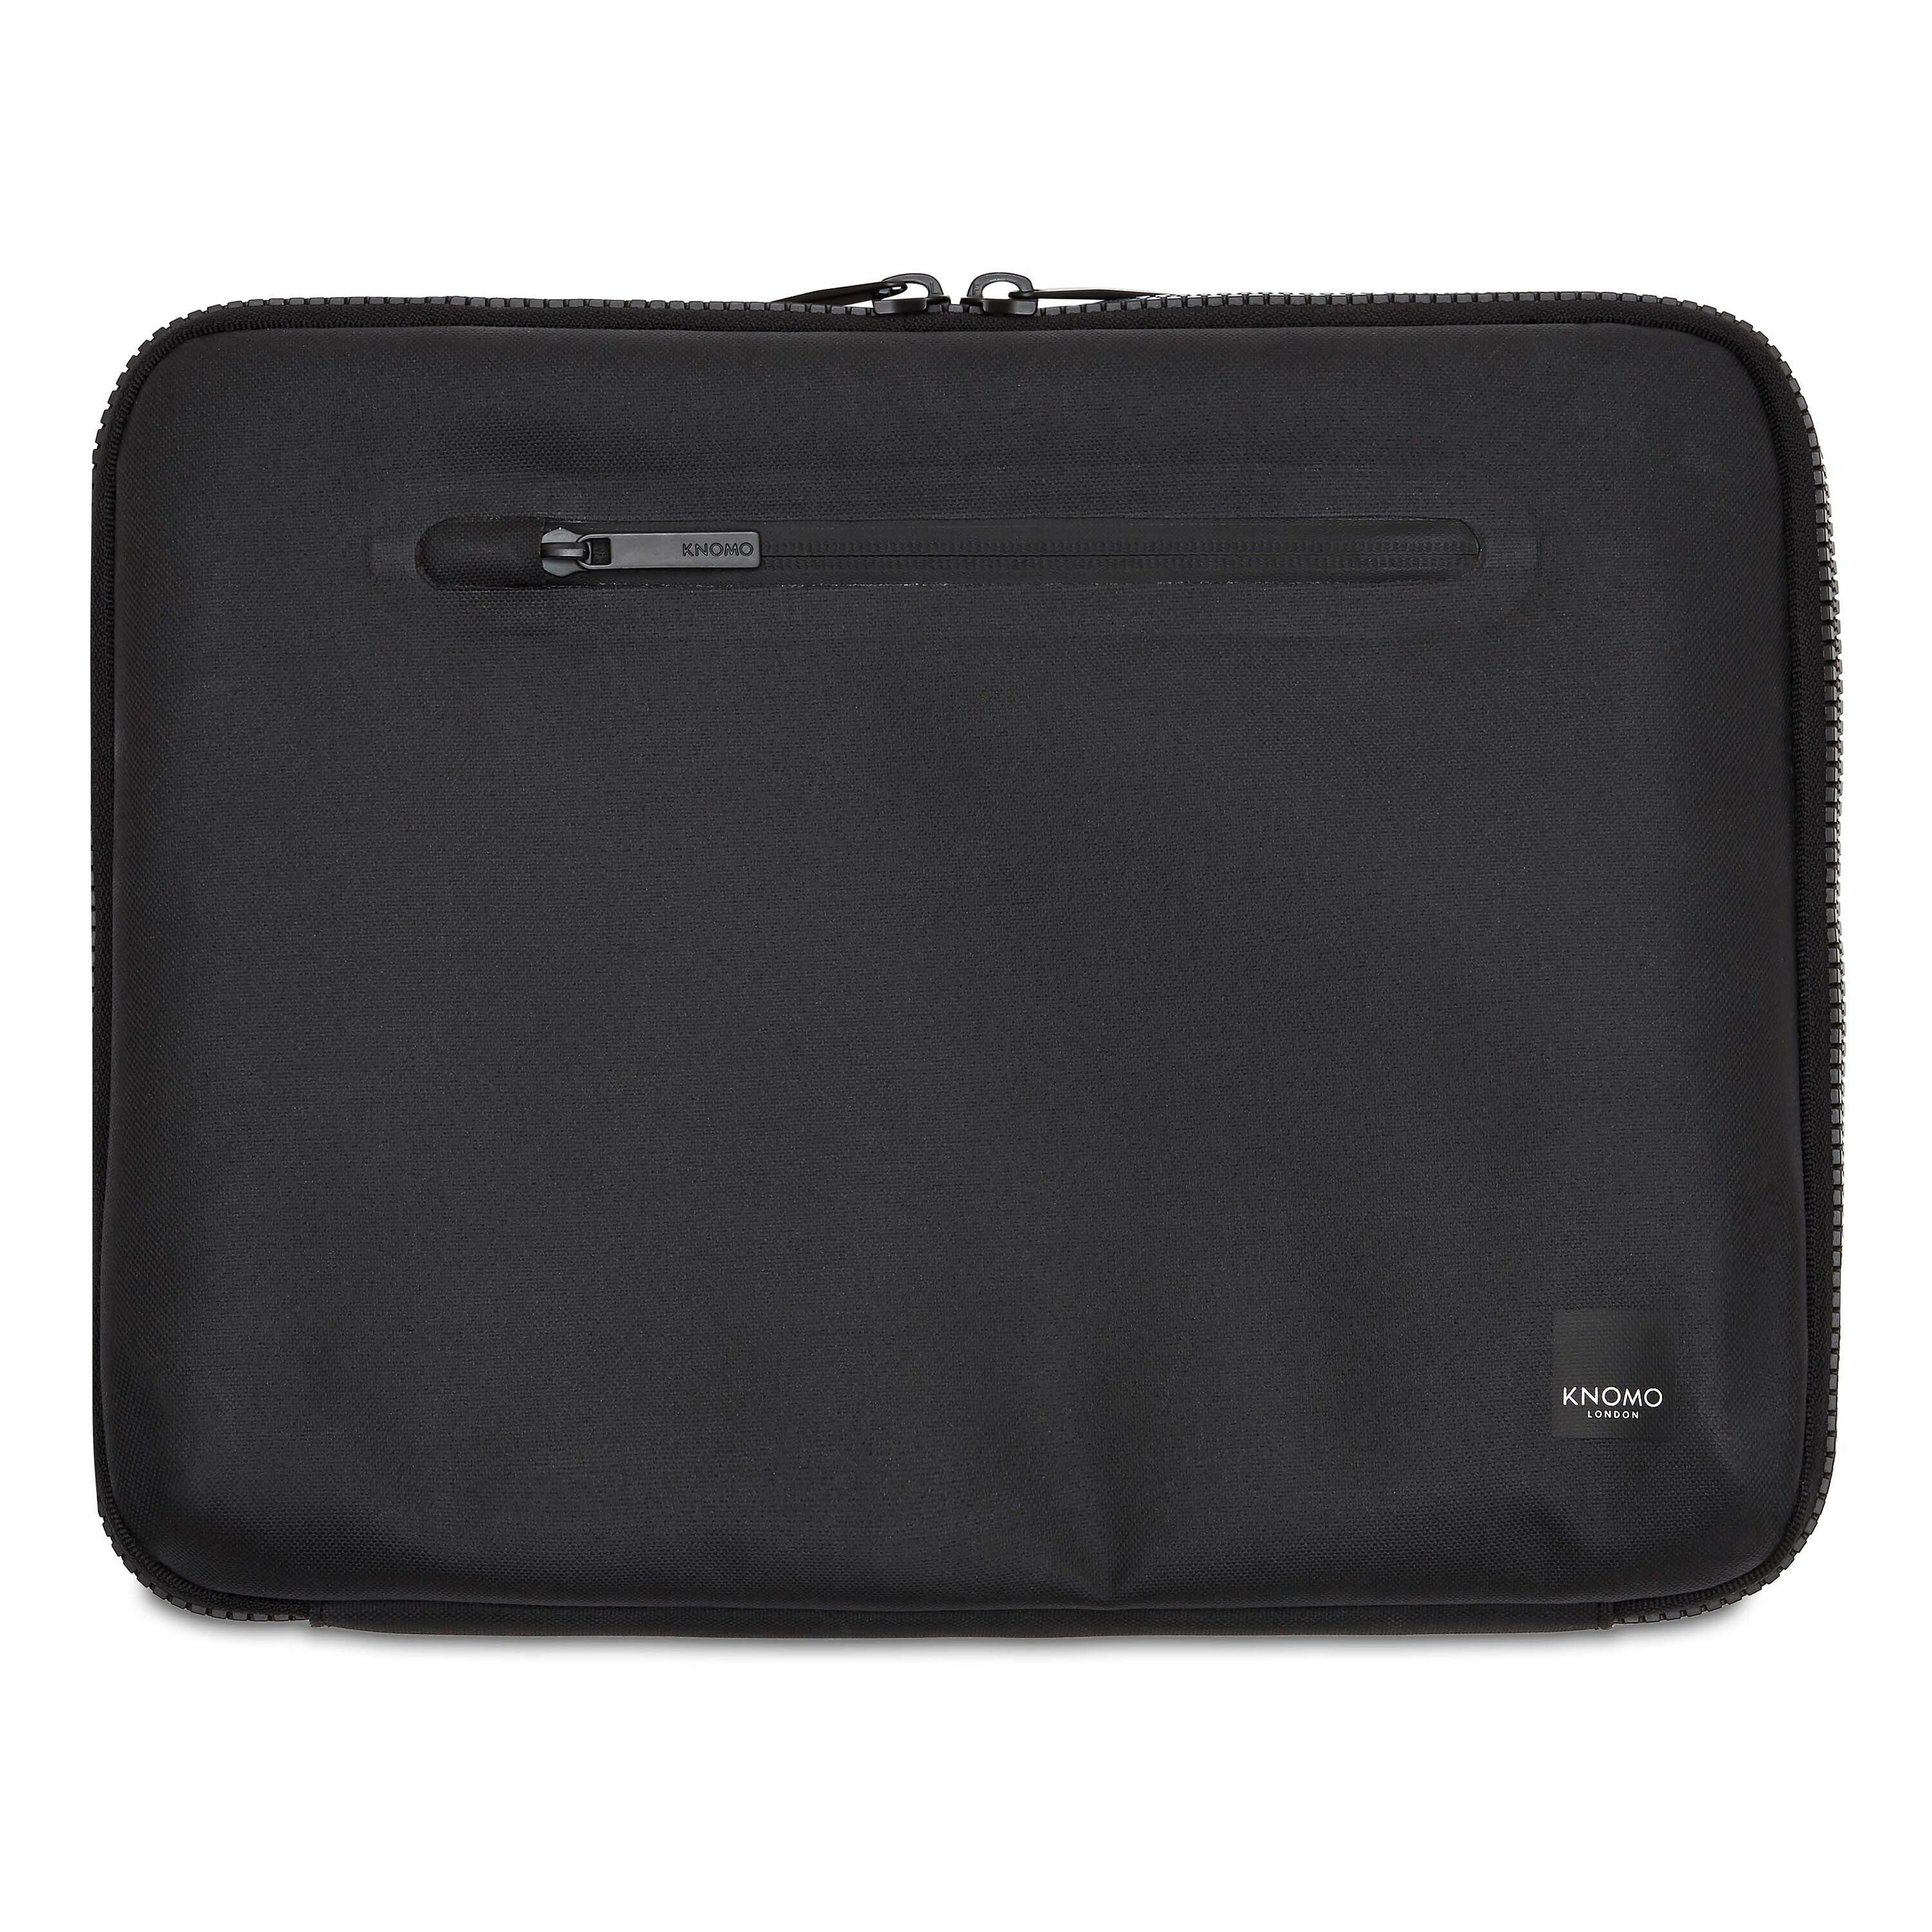 Knomo Laptoptasche Thames, Nylon, Ausstattung: Handyfach, Netzfach,  Tasche(n) außen online kaufen | OTTO